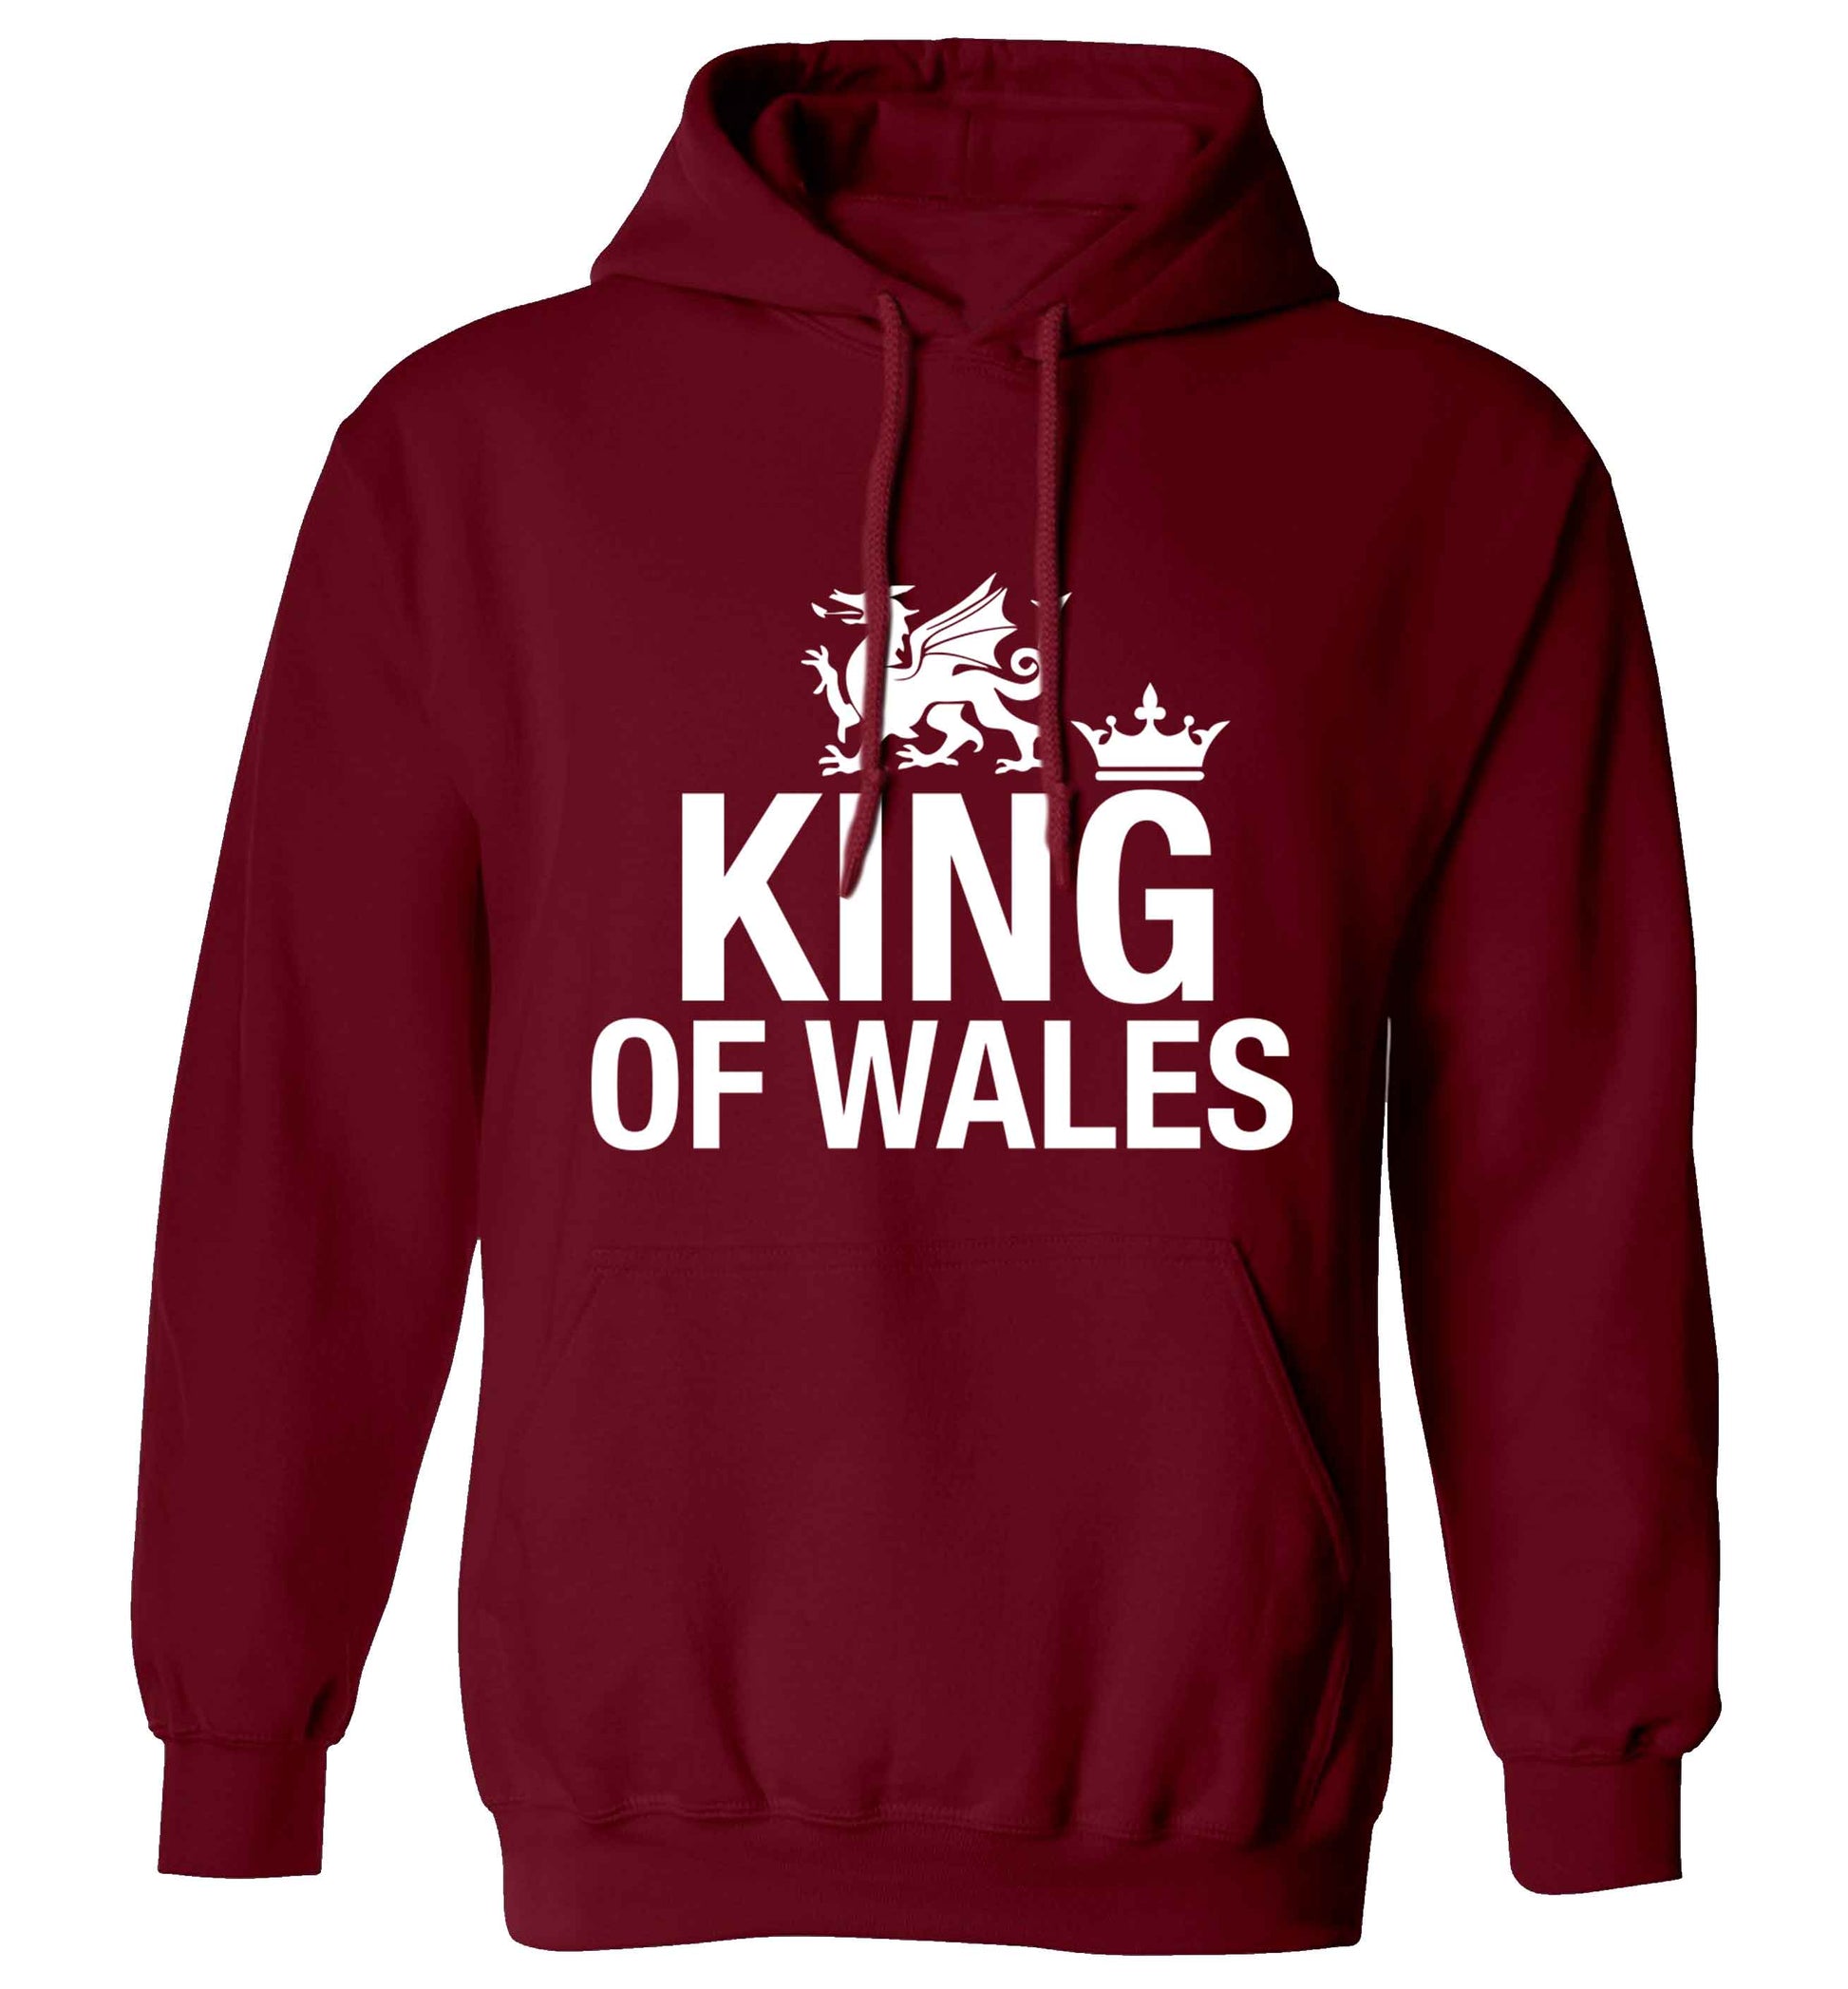 King of Wales adults unisex maroon hoodie 2XL